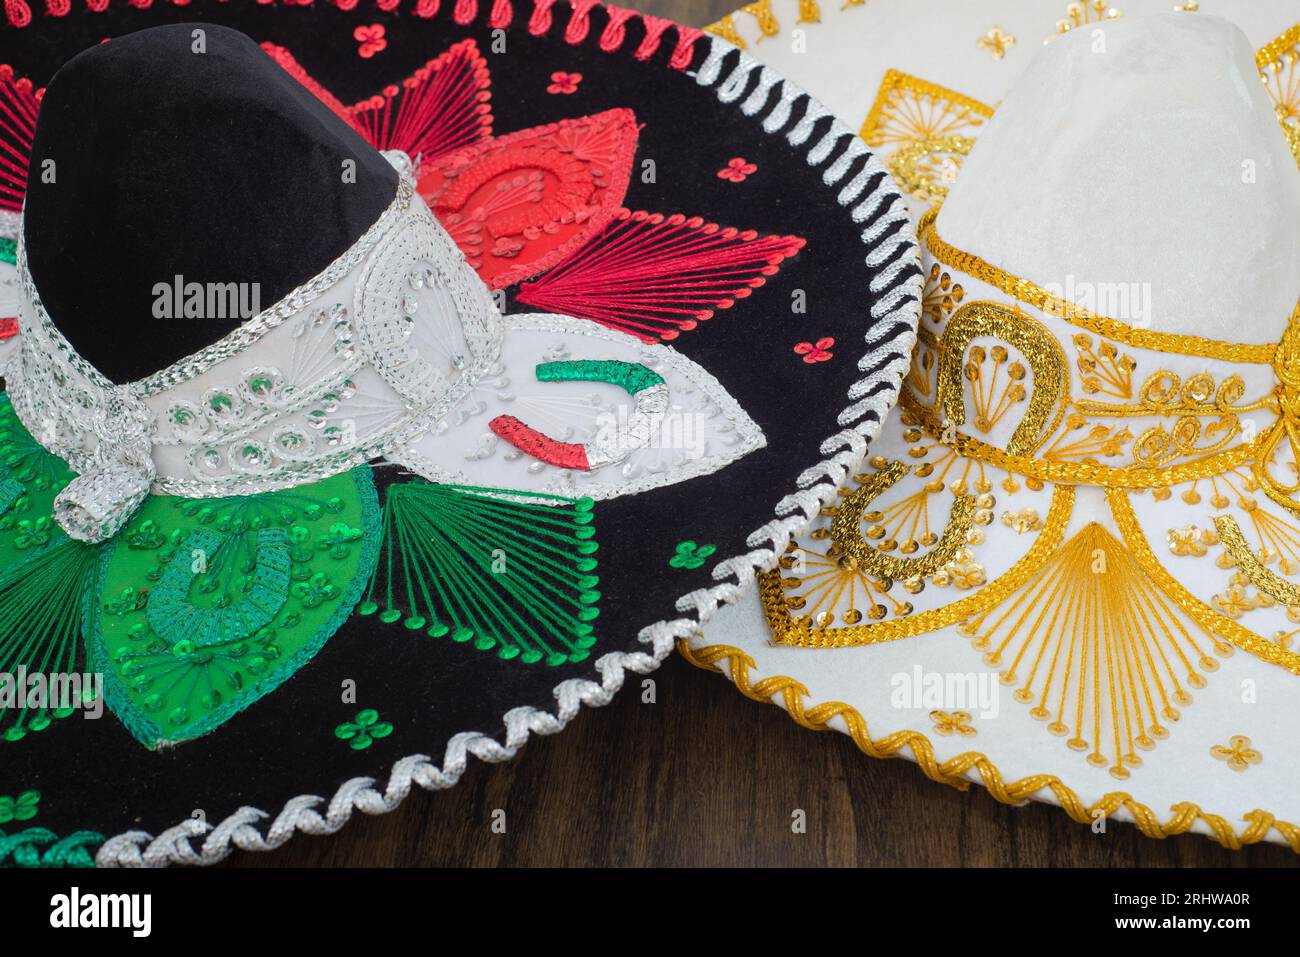 Chapeaux de charro mexicains sur la table en bois. Chapeaux Mariachi. Sombreros mexicains typiques. Banque D'Images